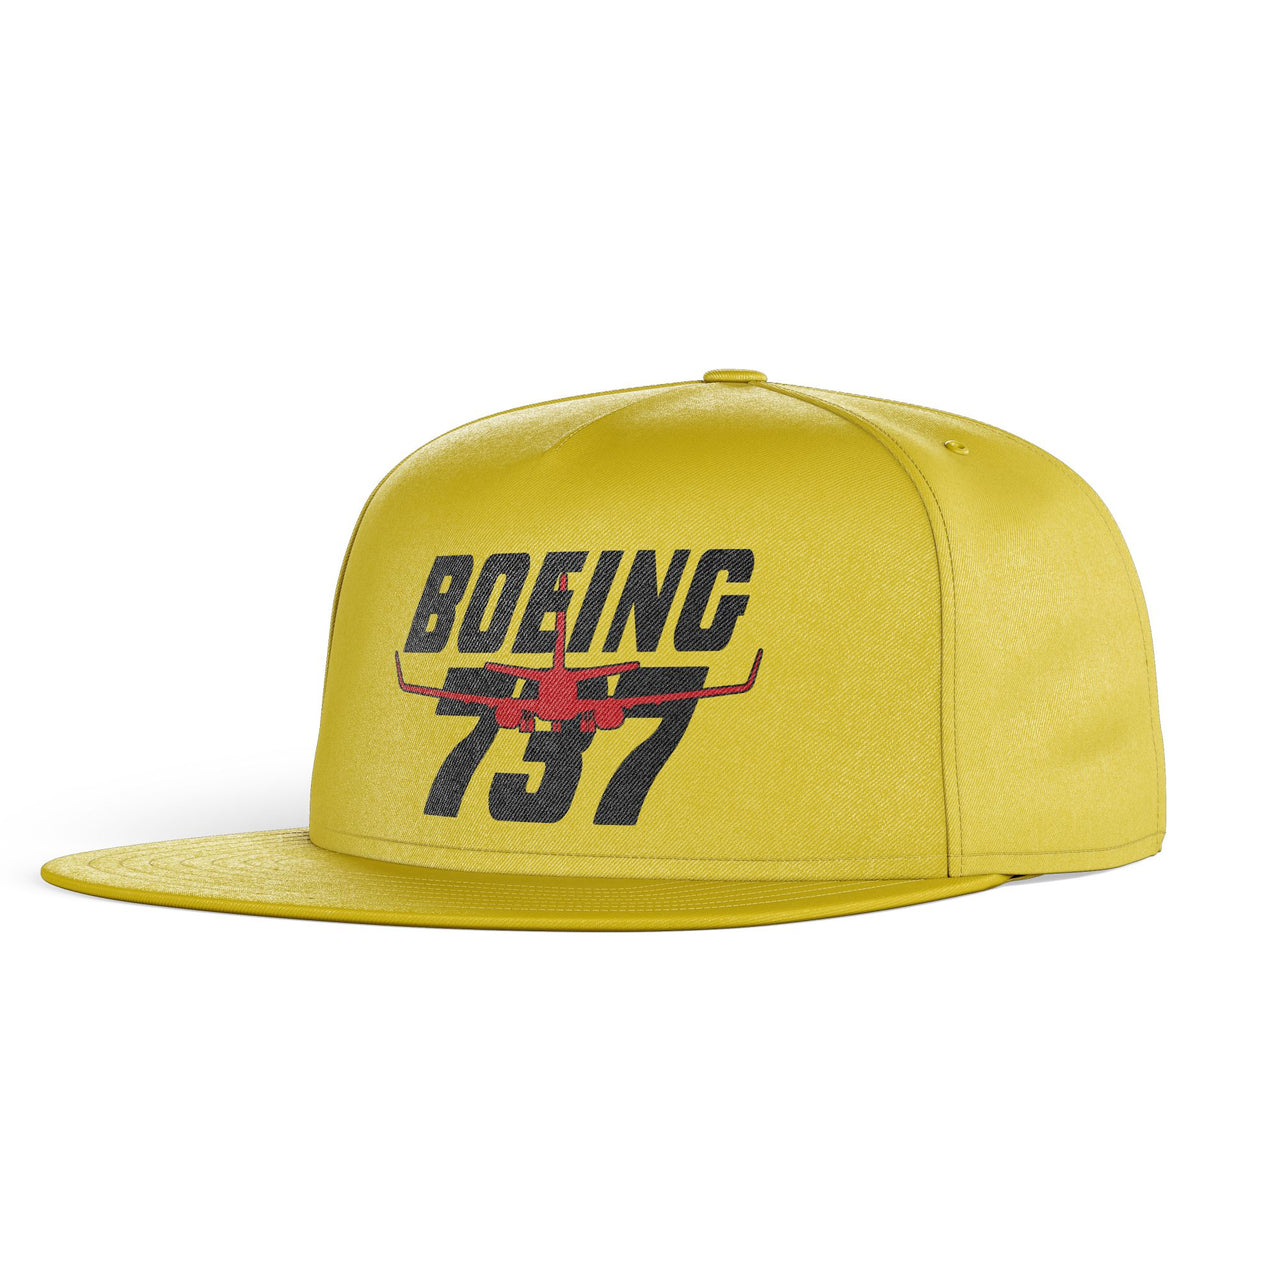 Amazing Boeing 737 Designed Snapback Caps & Hats